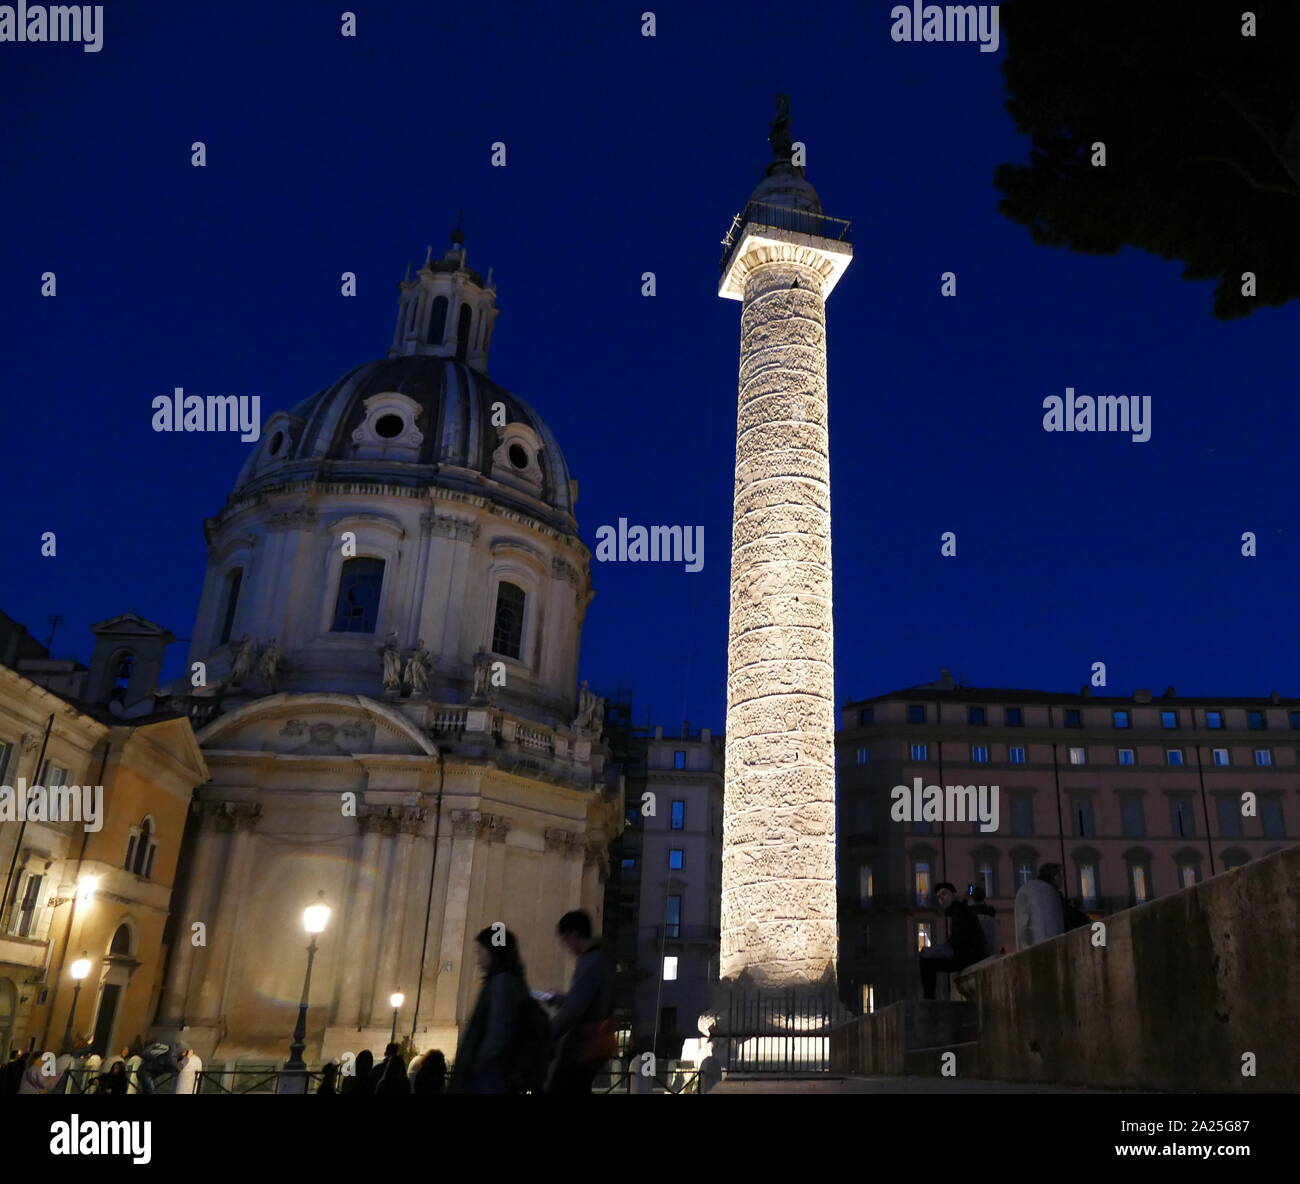 Blick auf die Trajan Spalte in der Nacht. Trajan's Column ist eine Römische Siegessäule in Rom, Italien, zum Gedenken an den römischen Kaiser Trajan's Sieg in der Dakischen Kriege. Stockfoto